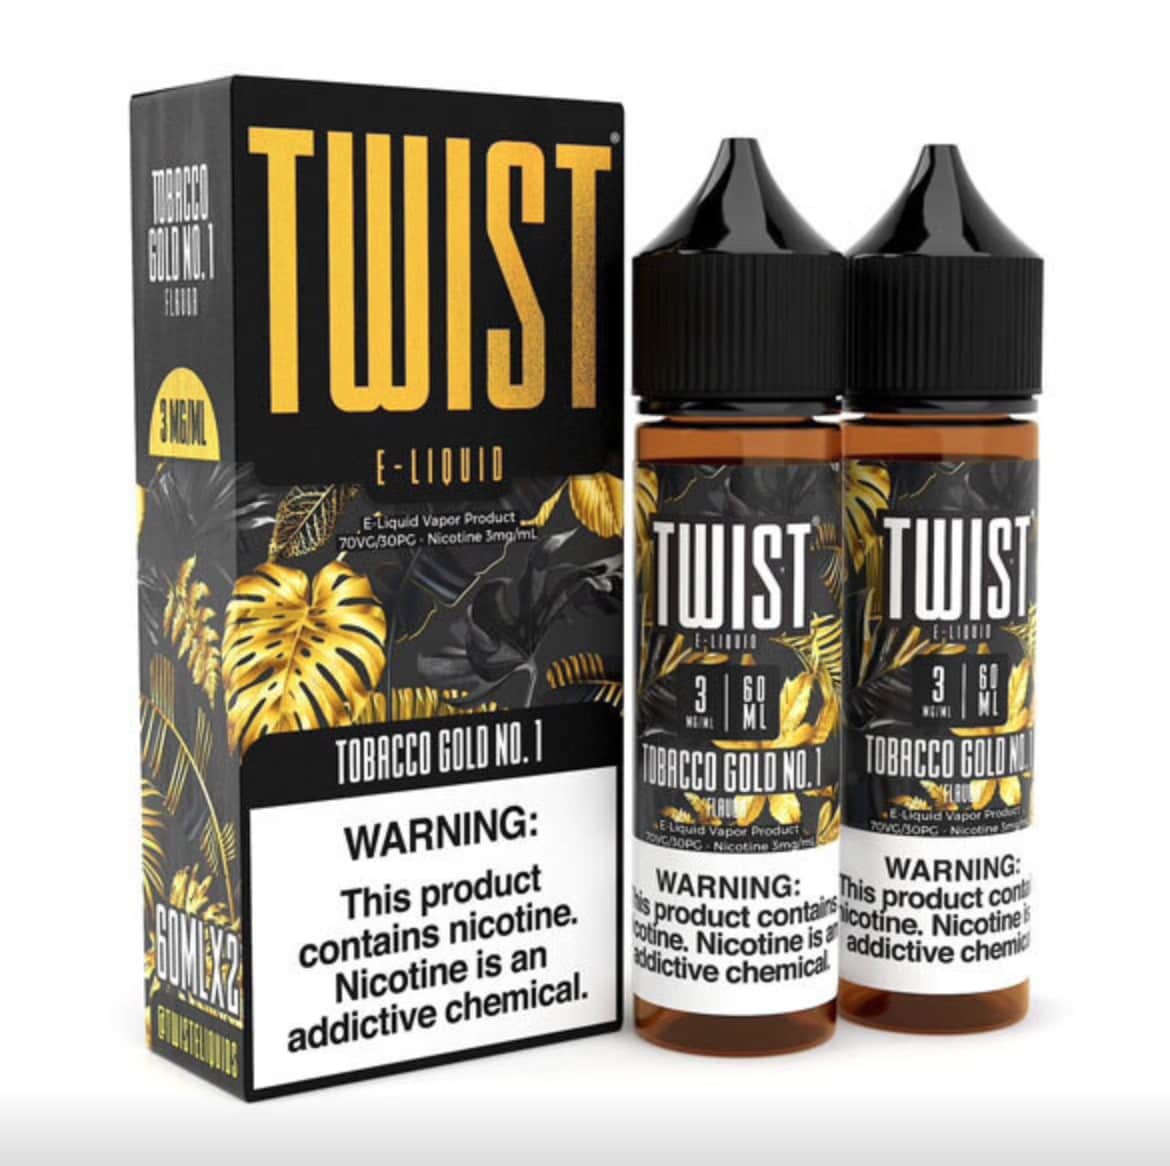 Tobacco Gold No.1 by Twist E-liquids